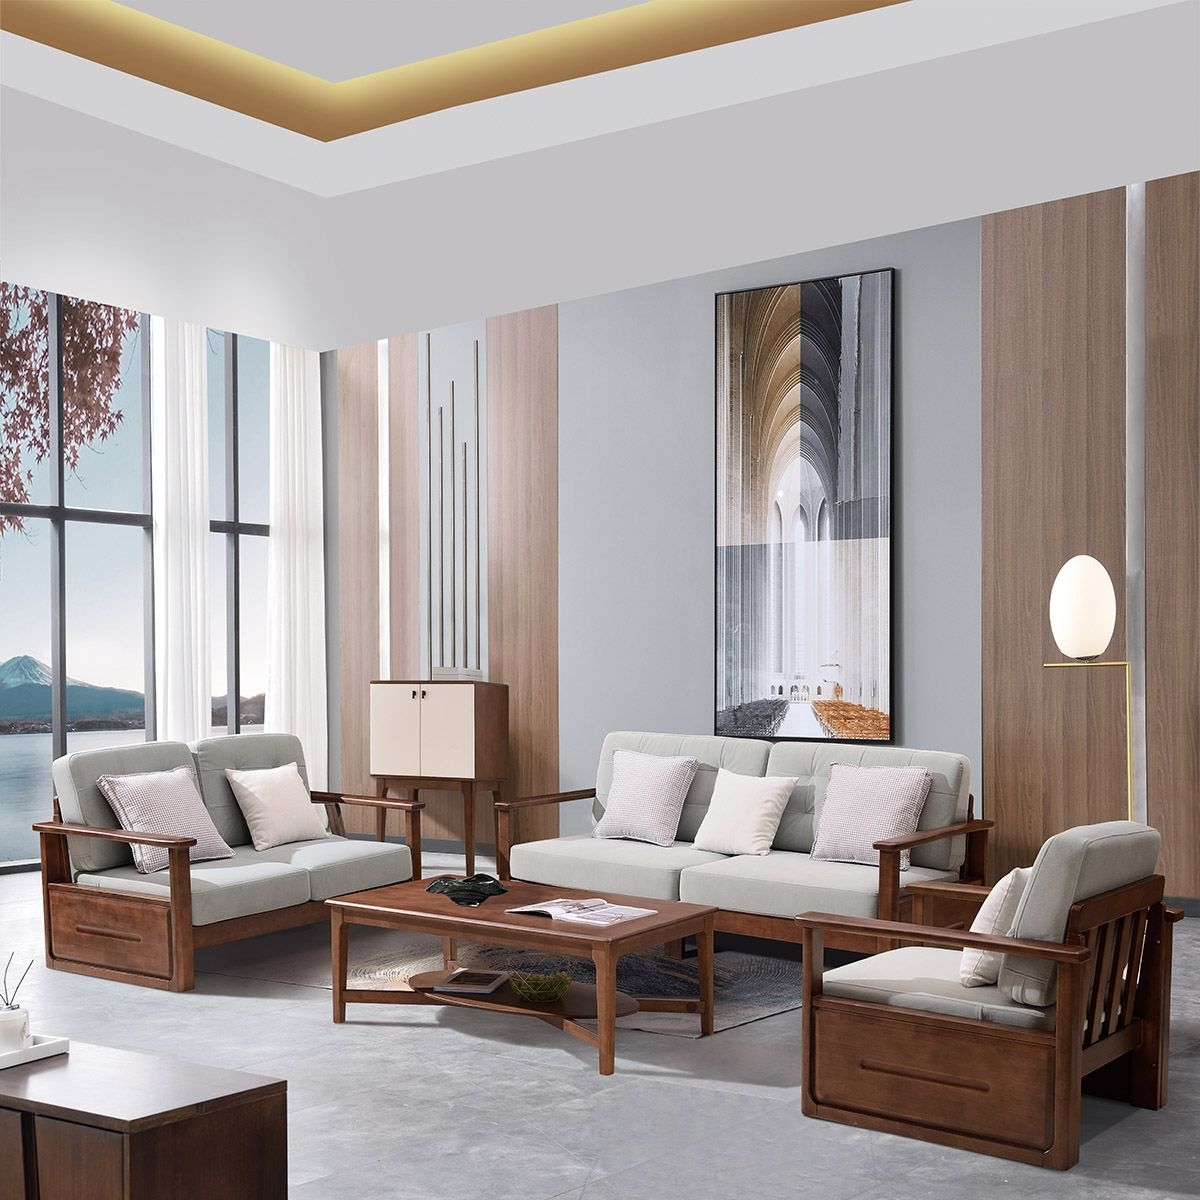 简木系列 北欧风格 家用客厅科技布布艺直排组合沙发123